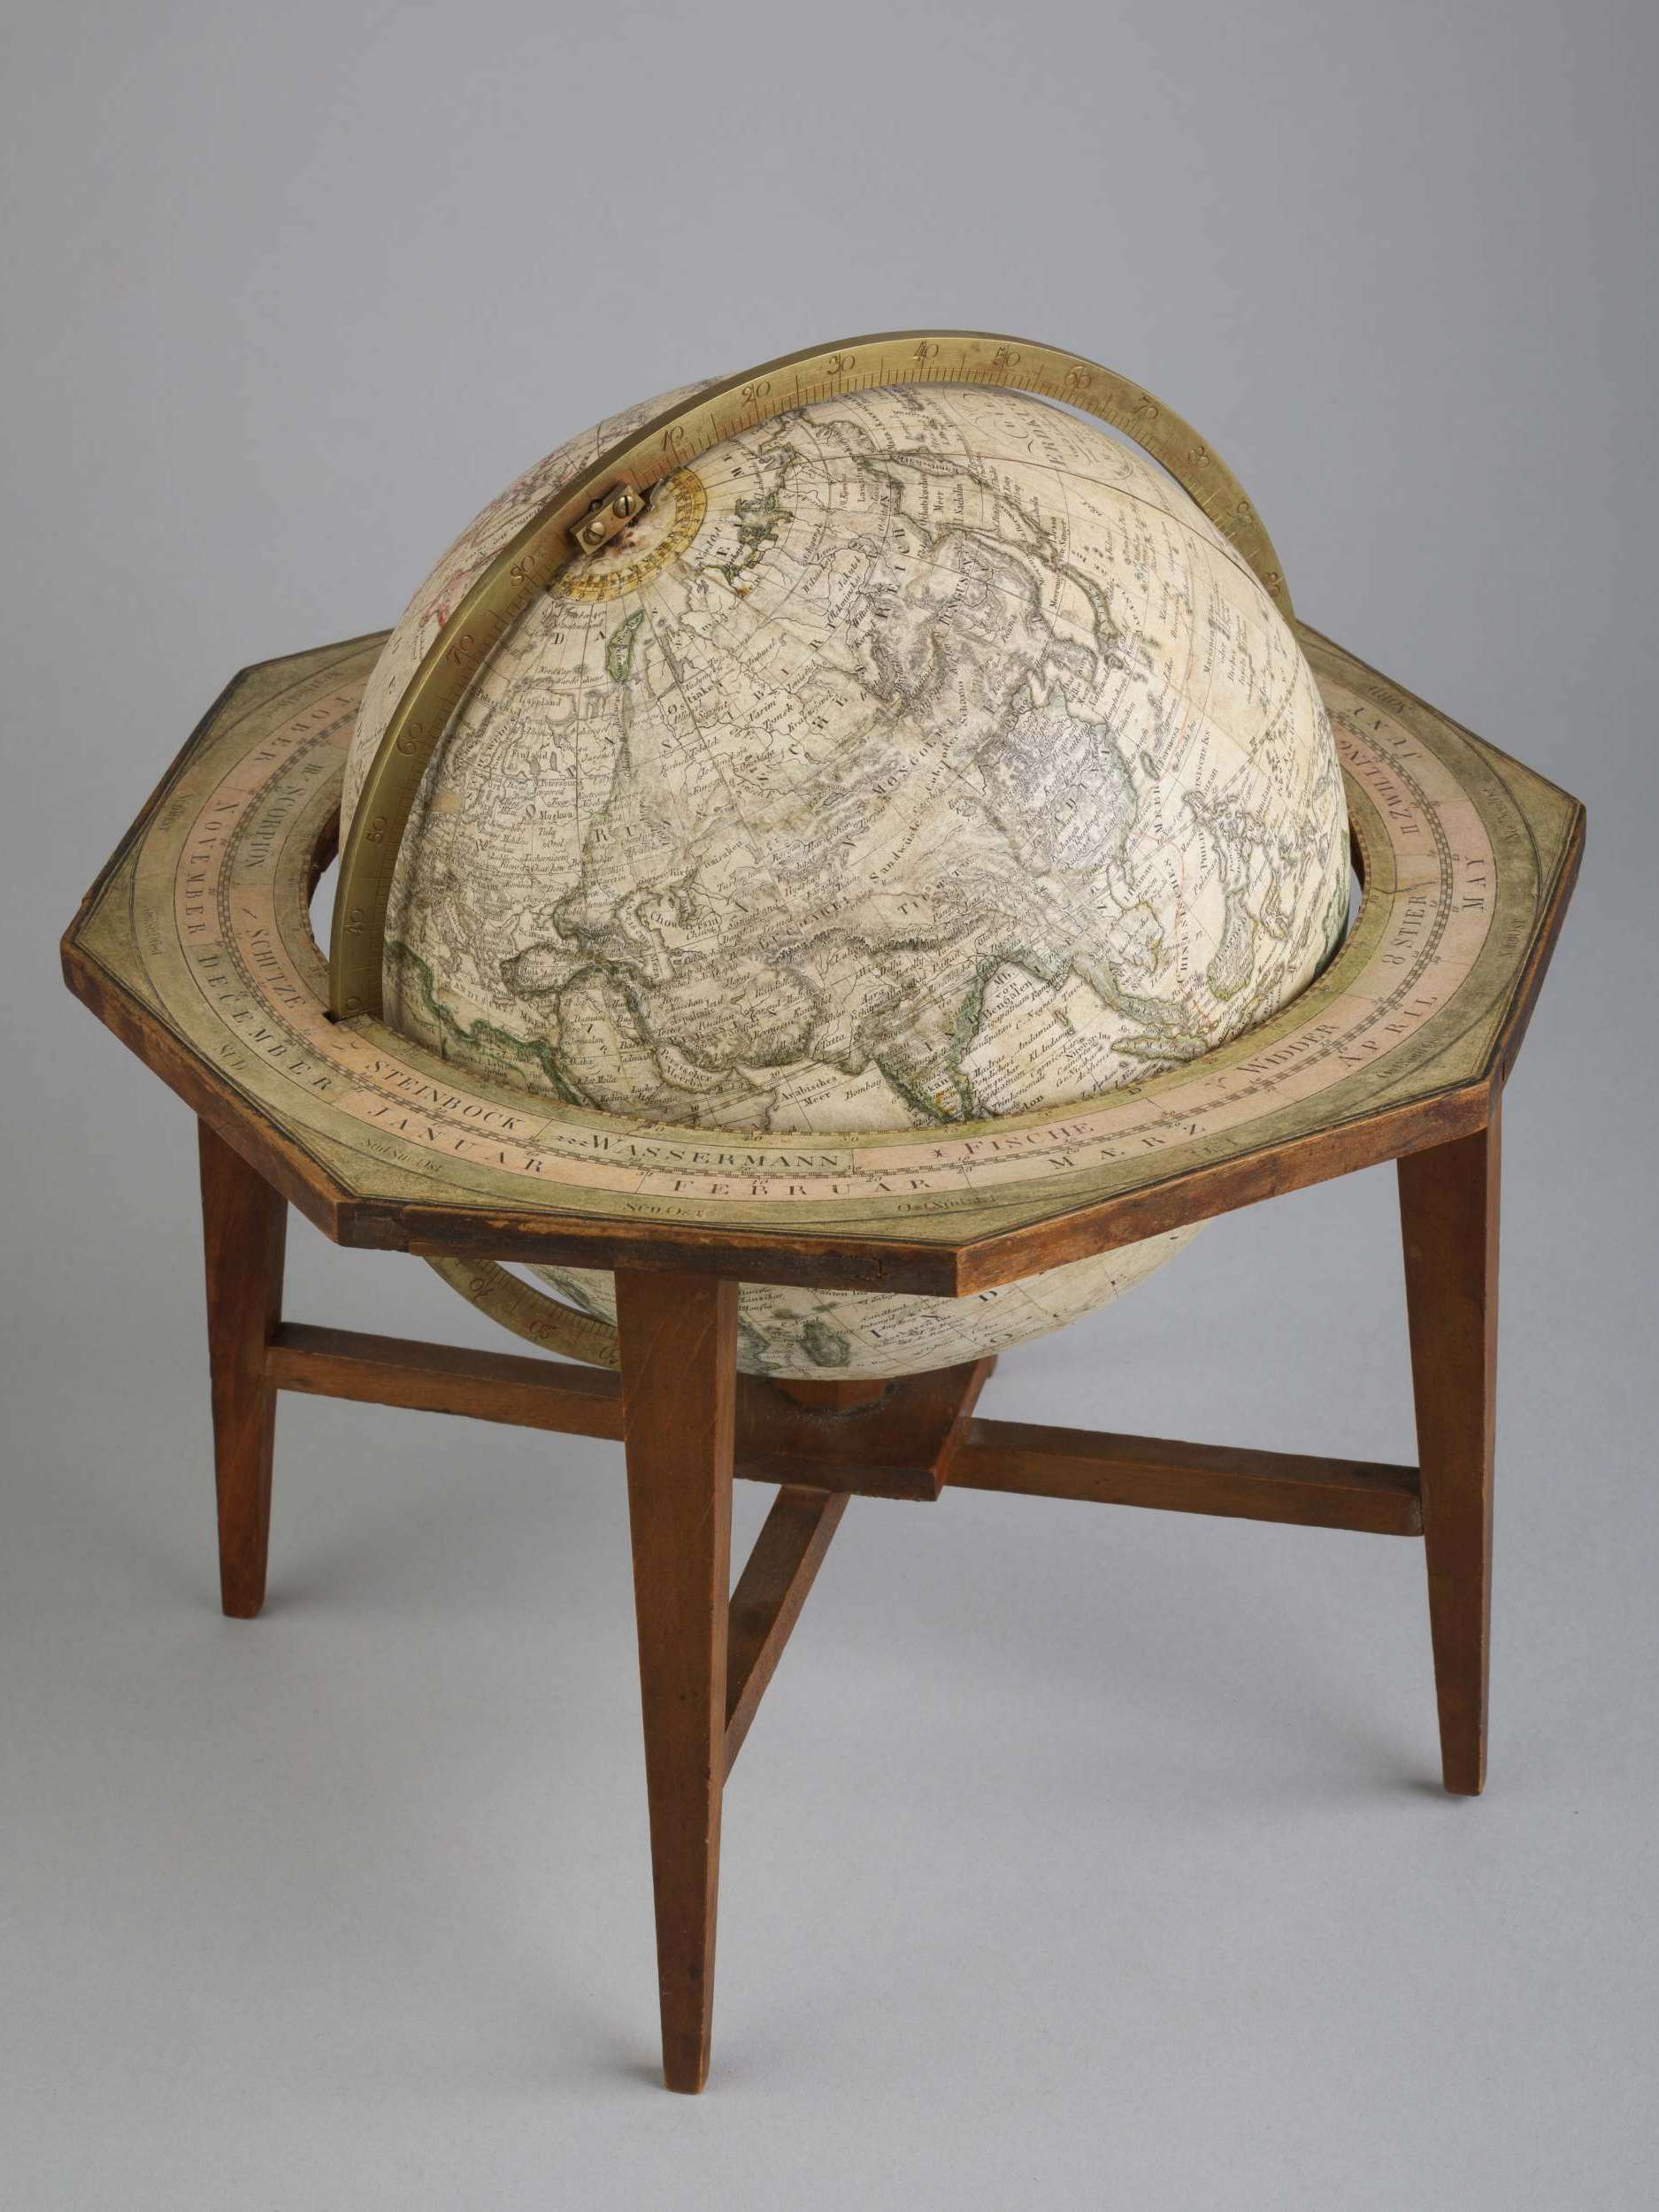 Erdglobus, terrestrial globe, Schropp